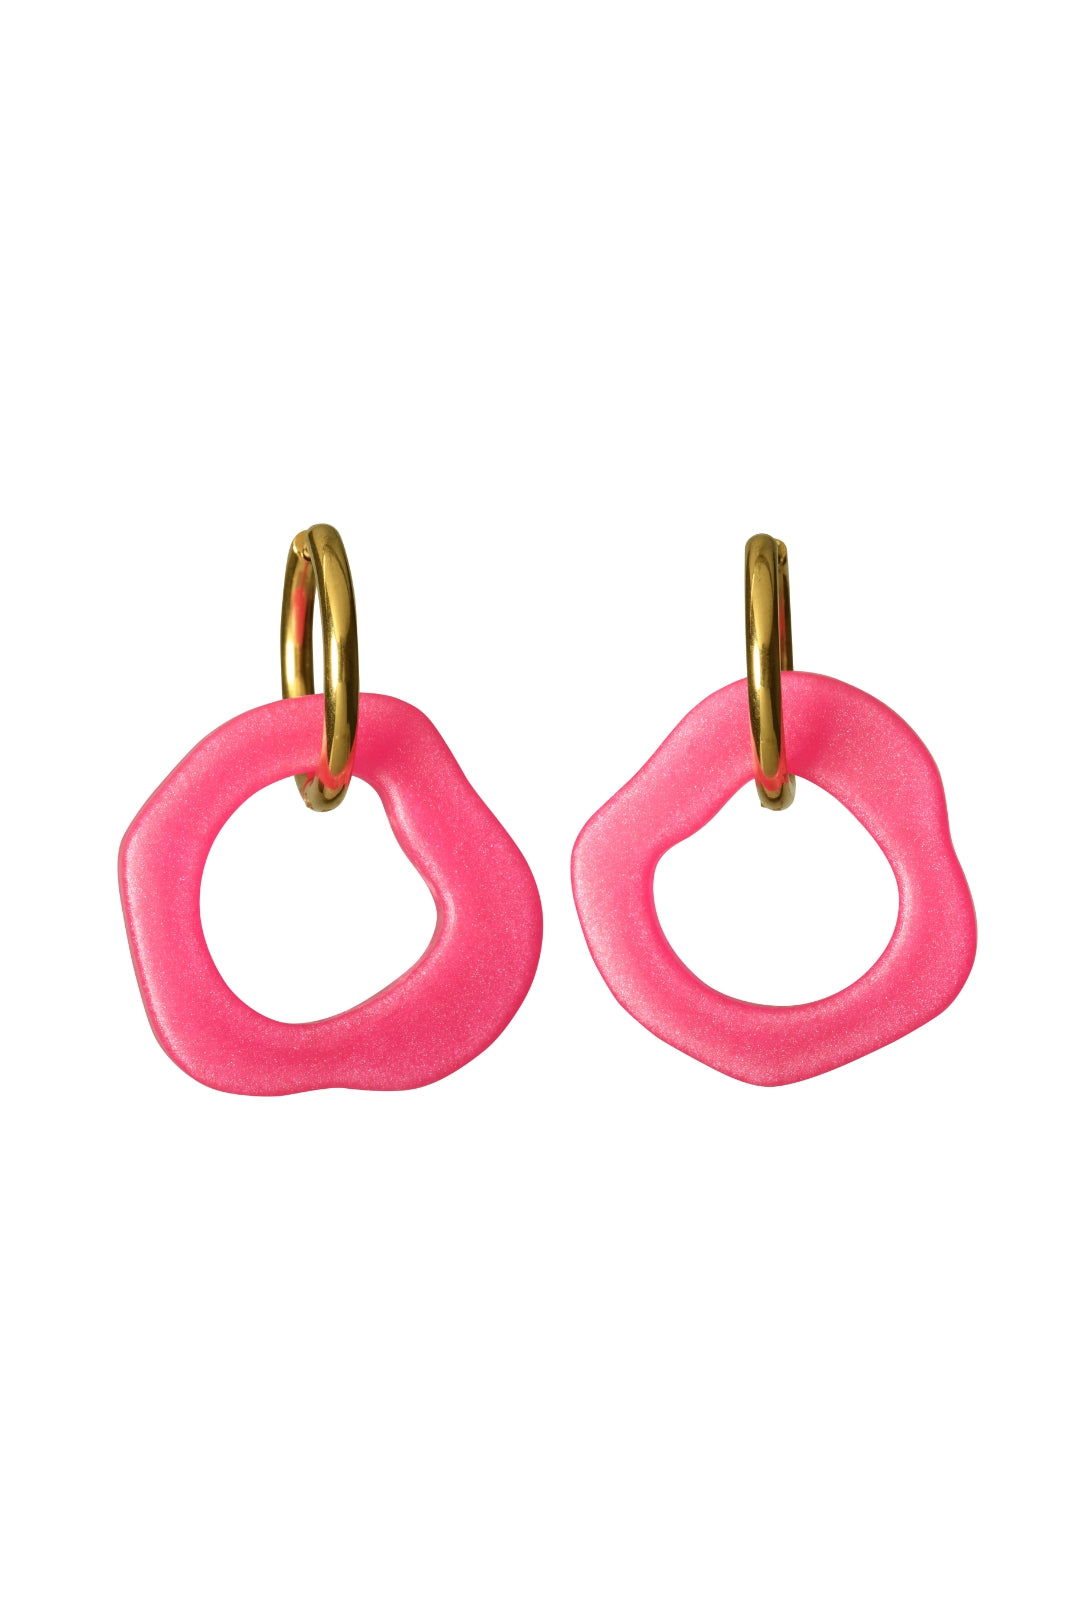 Ear Candy Pink Earrings